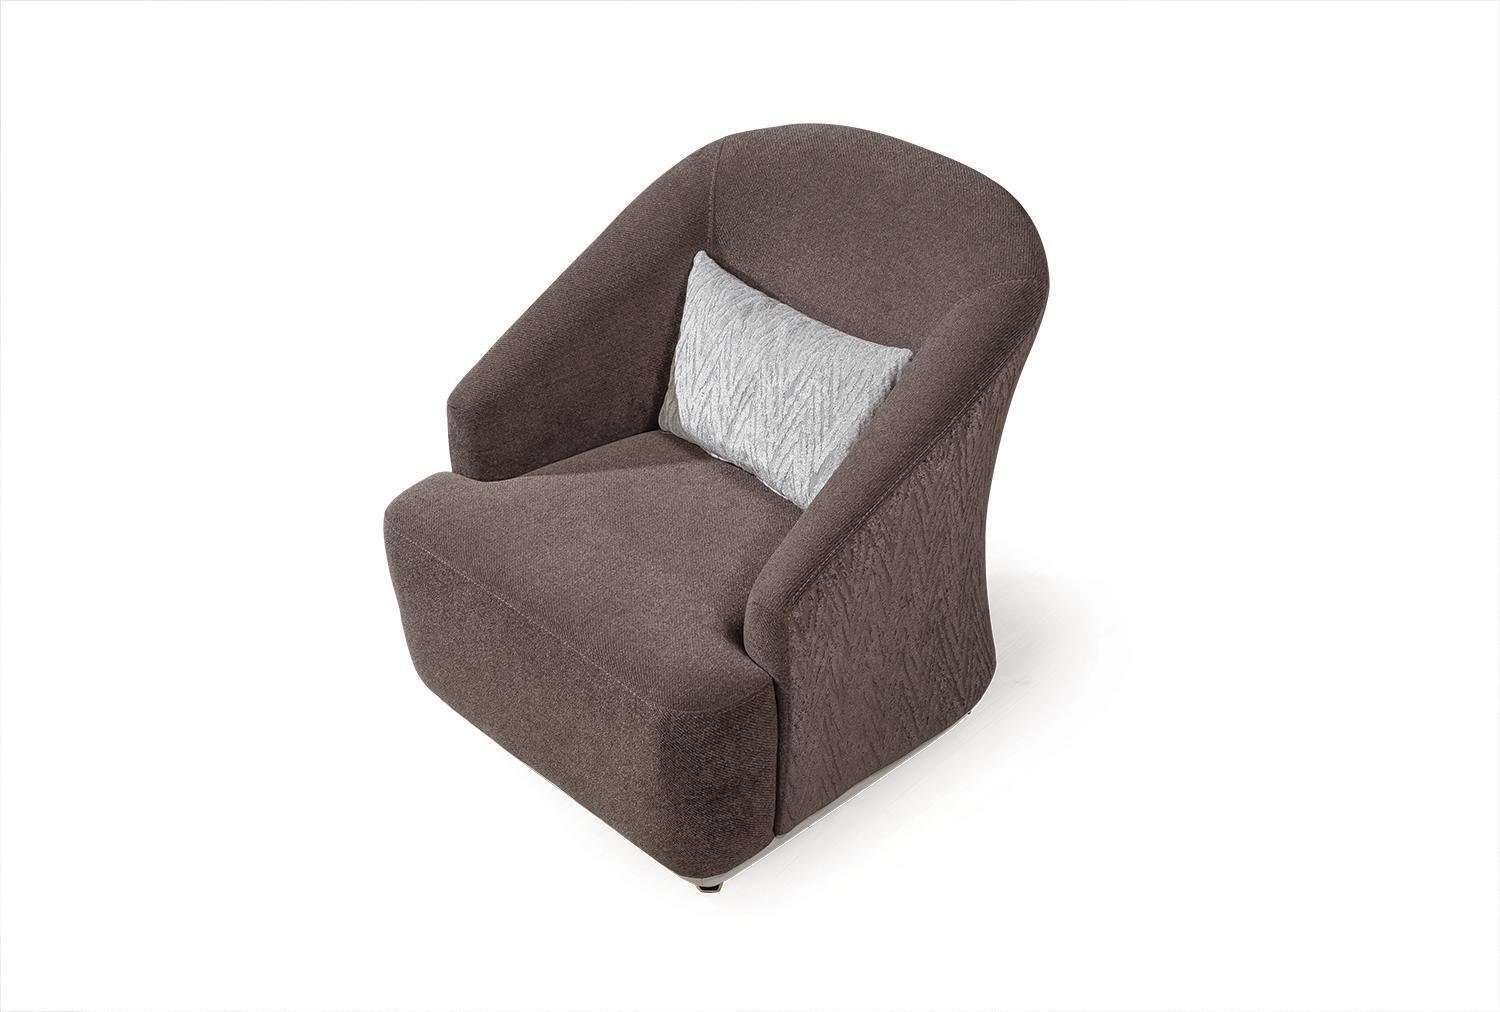 1Sitz Einsitzer Sofa mit Wohnzimmer Möbel JVmoebel Couch Metall Sessel Textil Sessel